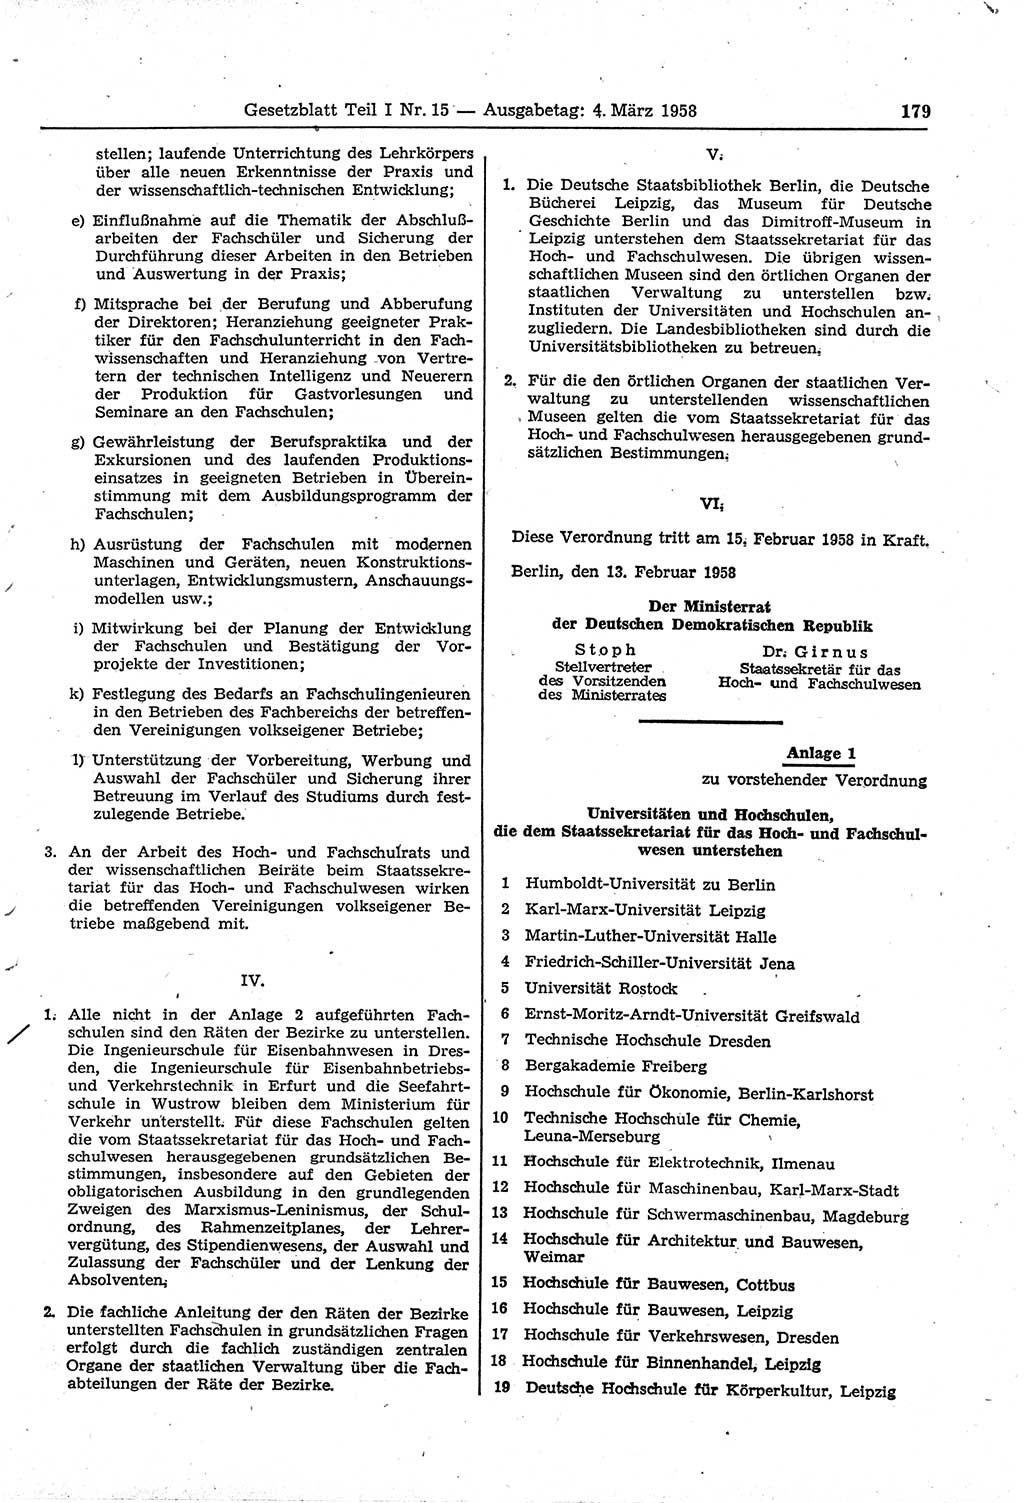 Gesetzblatt (GBl.) der Deutschen Demokratischen Republik (DDR) Teil Ⅰ 1958, Seite 179 (GBl. DDR Ⅰ 1958, S. 179)